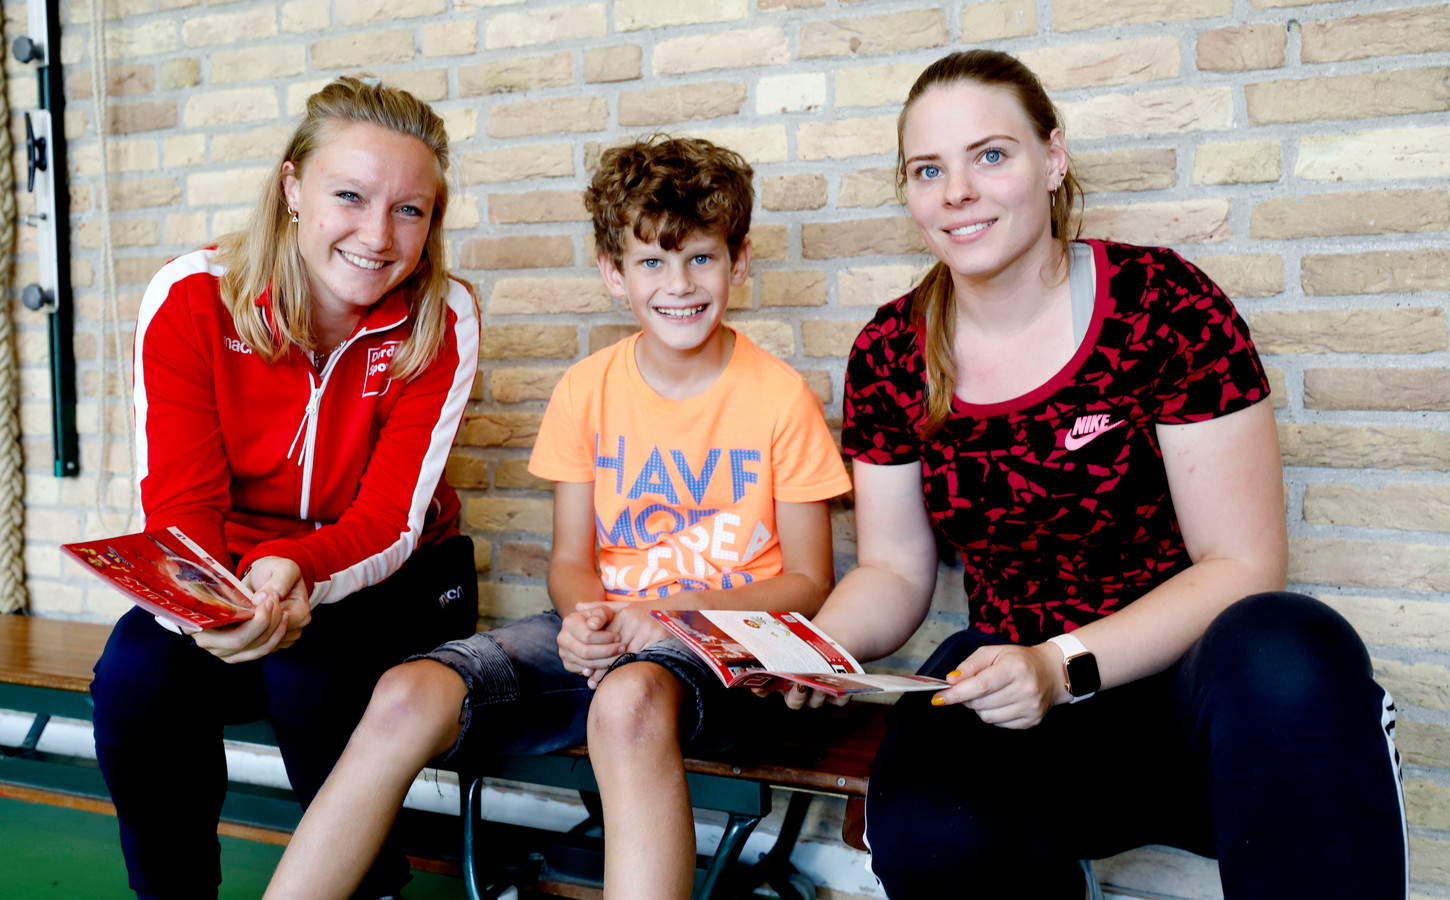 V.l.n.r.: Een sportregisseur van Dordt Sport en een leerling en sportjuffrouw van de Prinses Julianaschool tijdens de lancering van het nieuwe platform Sporten met Luuk.